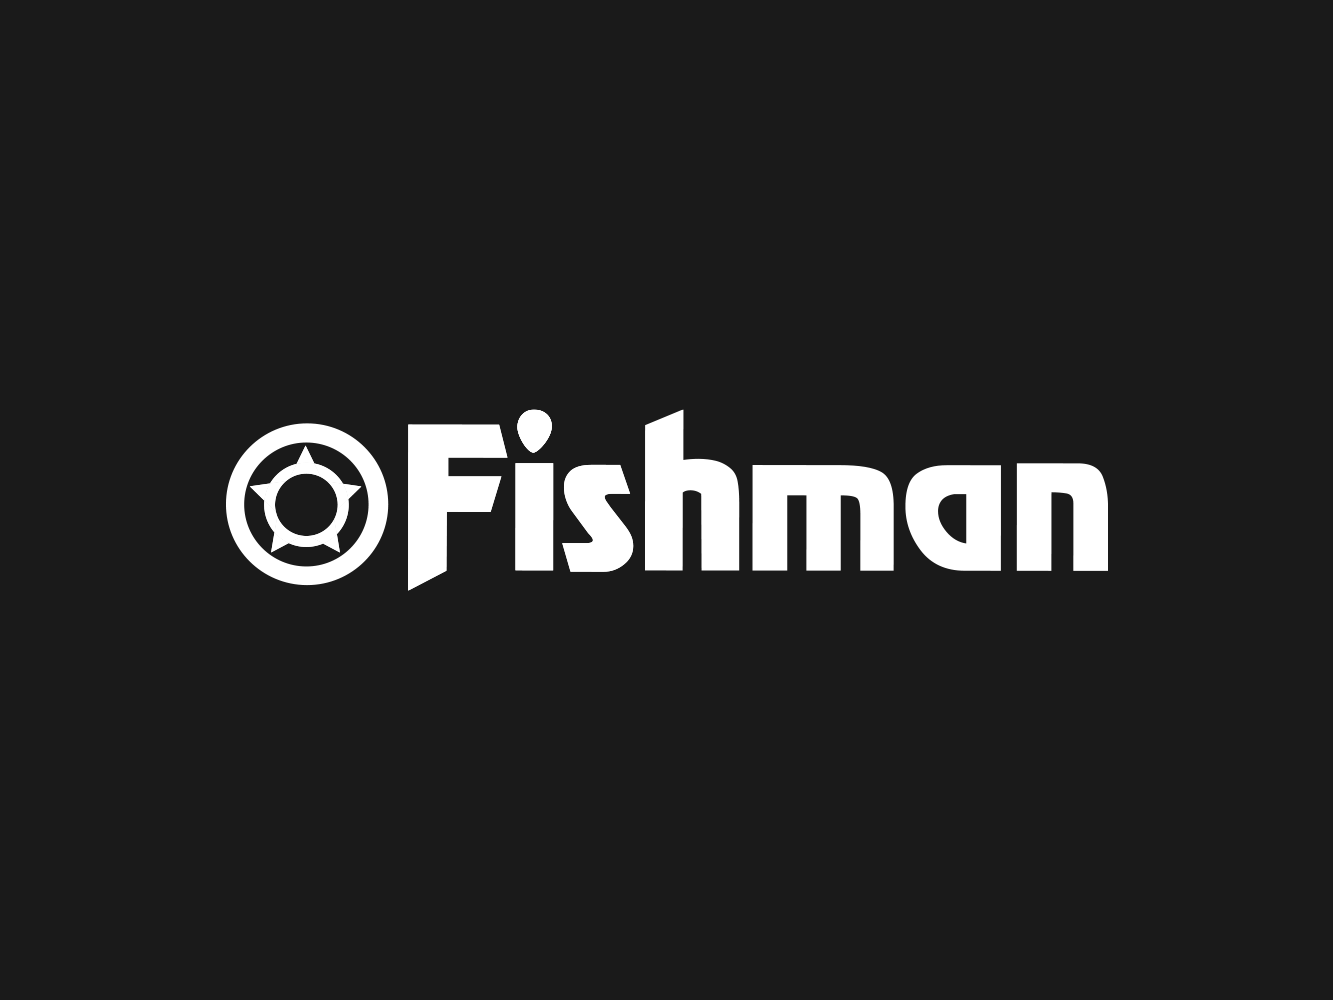 www.fish-man.com